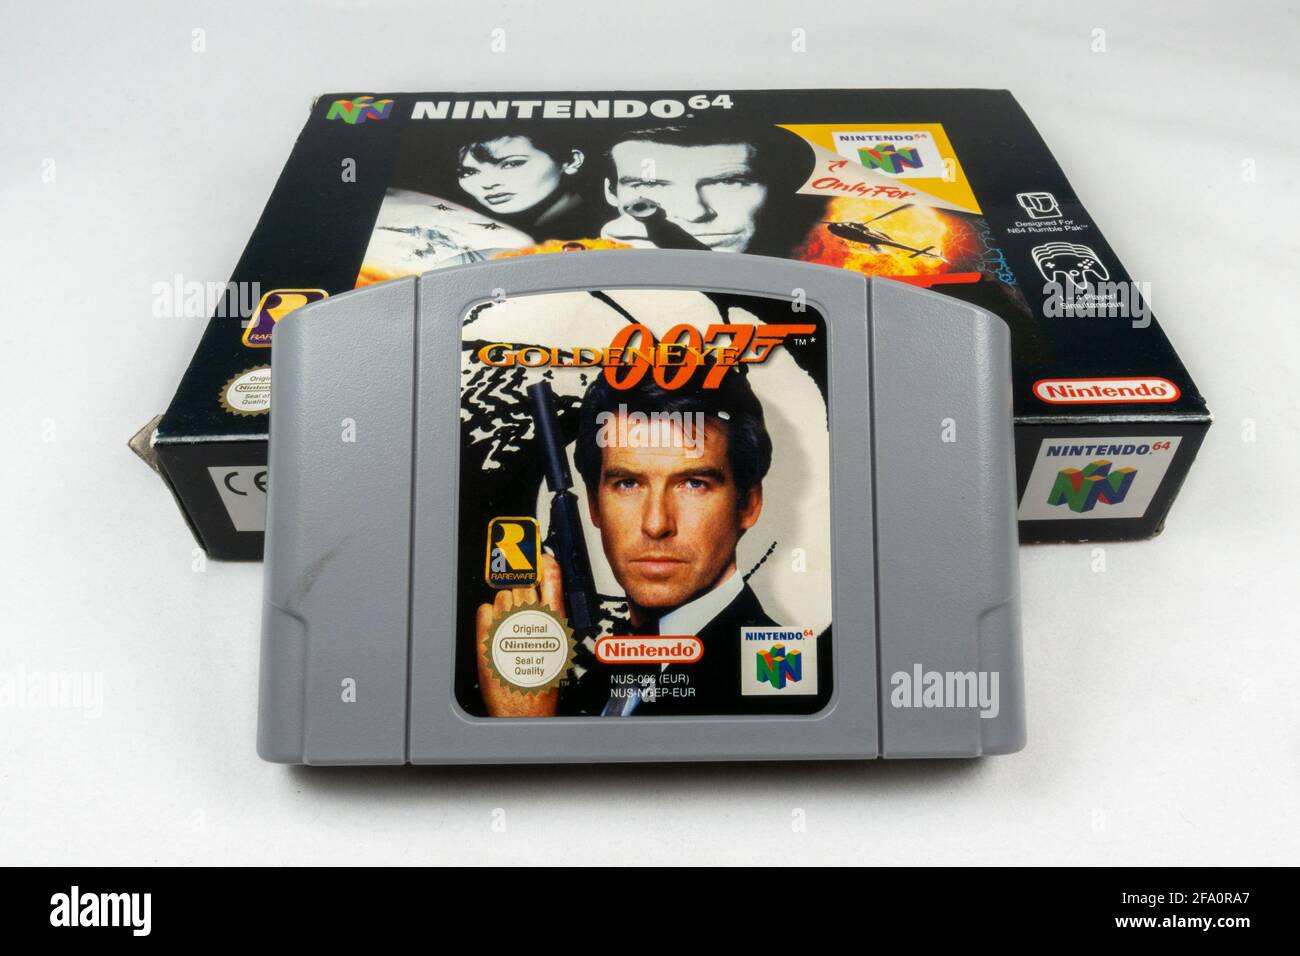 La cartouche et la boîte de jeux vidéo 'Goldeneye 007' Nintendo 64 ou N64, une console de jeux vidéo de cinquième génération lancée en 1996 au Japon. Banque D'Images